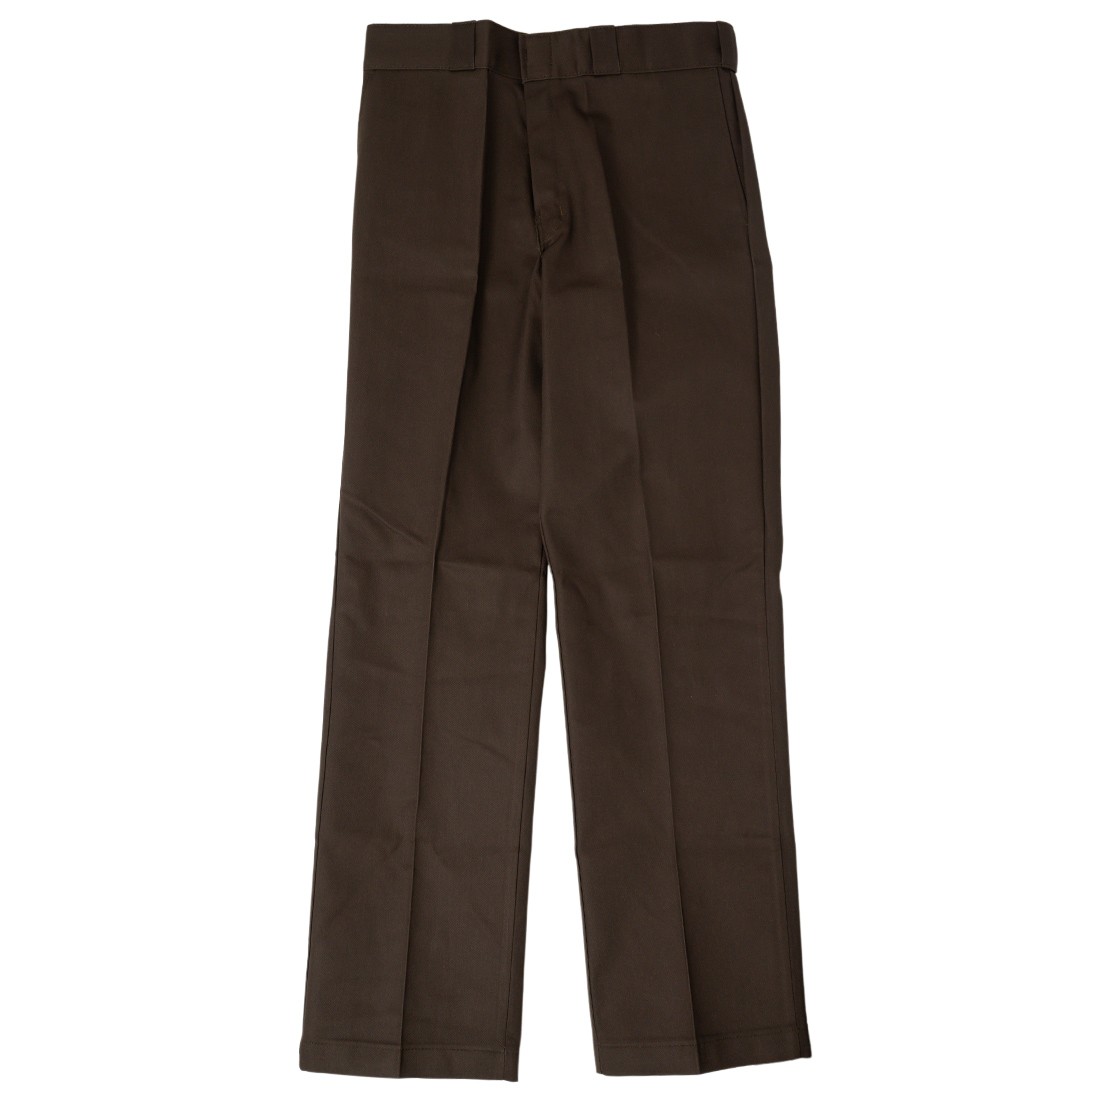 Dickies Men Fit 874 Work Pants brown dark